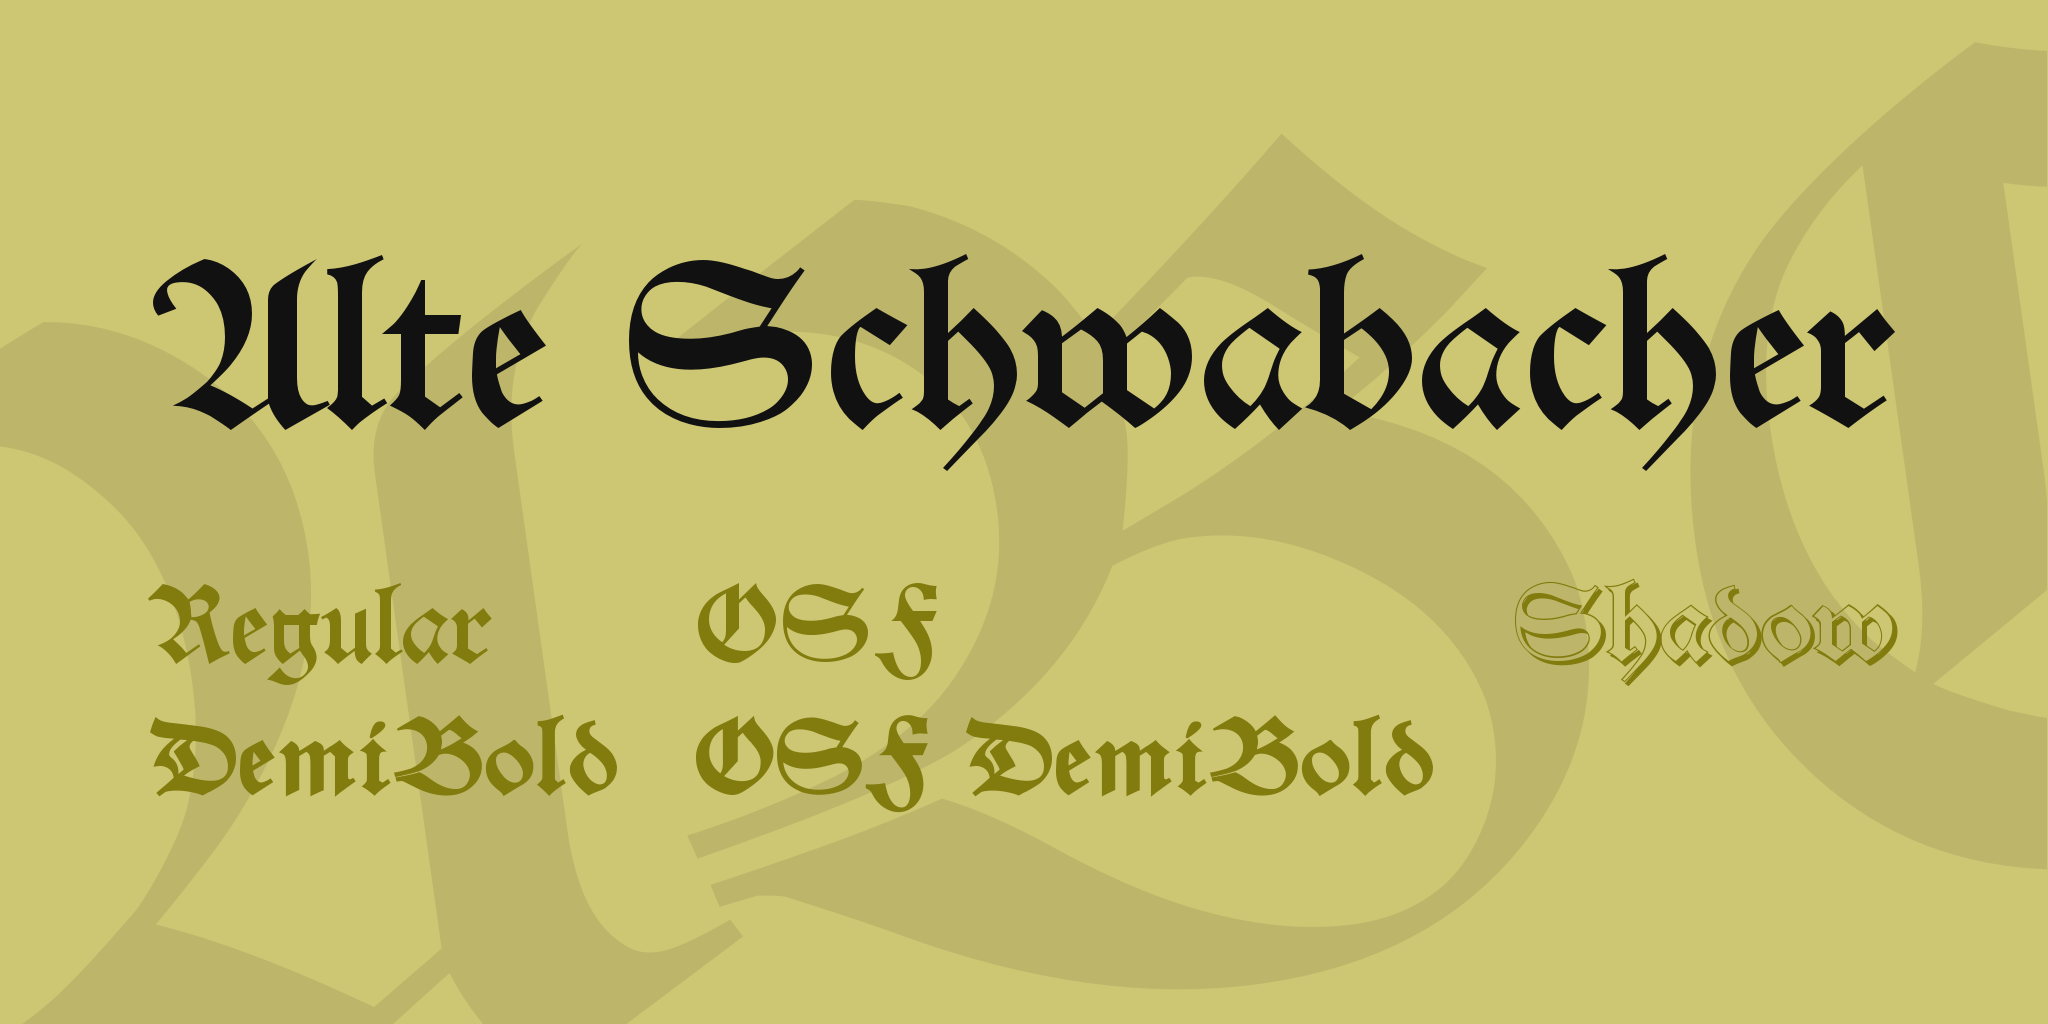 Alte Schwabacher